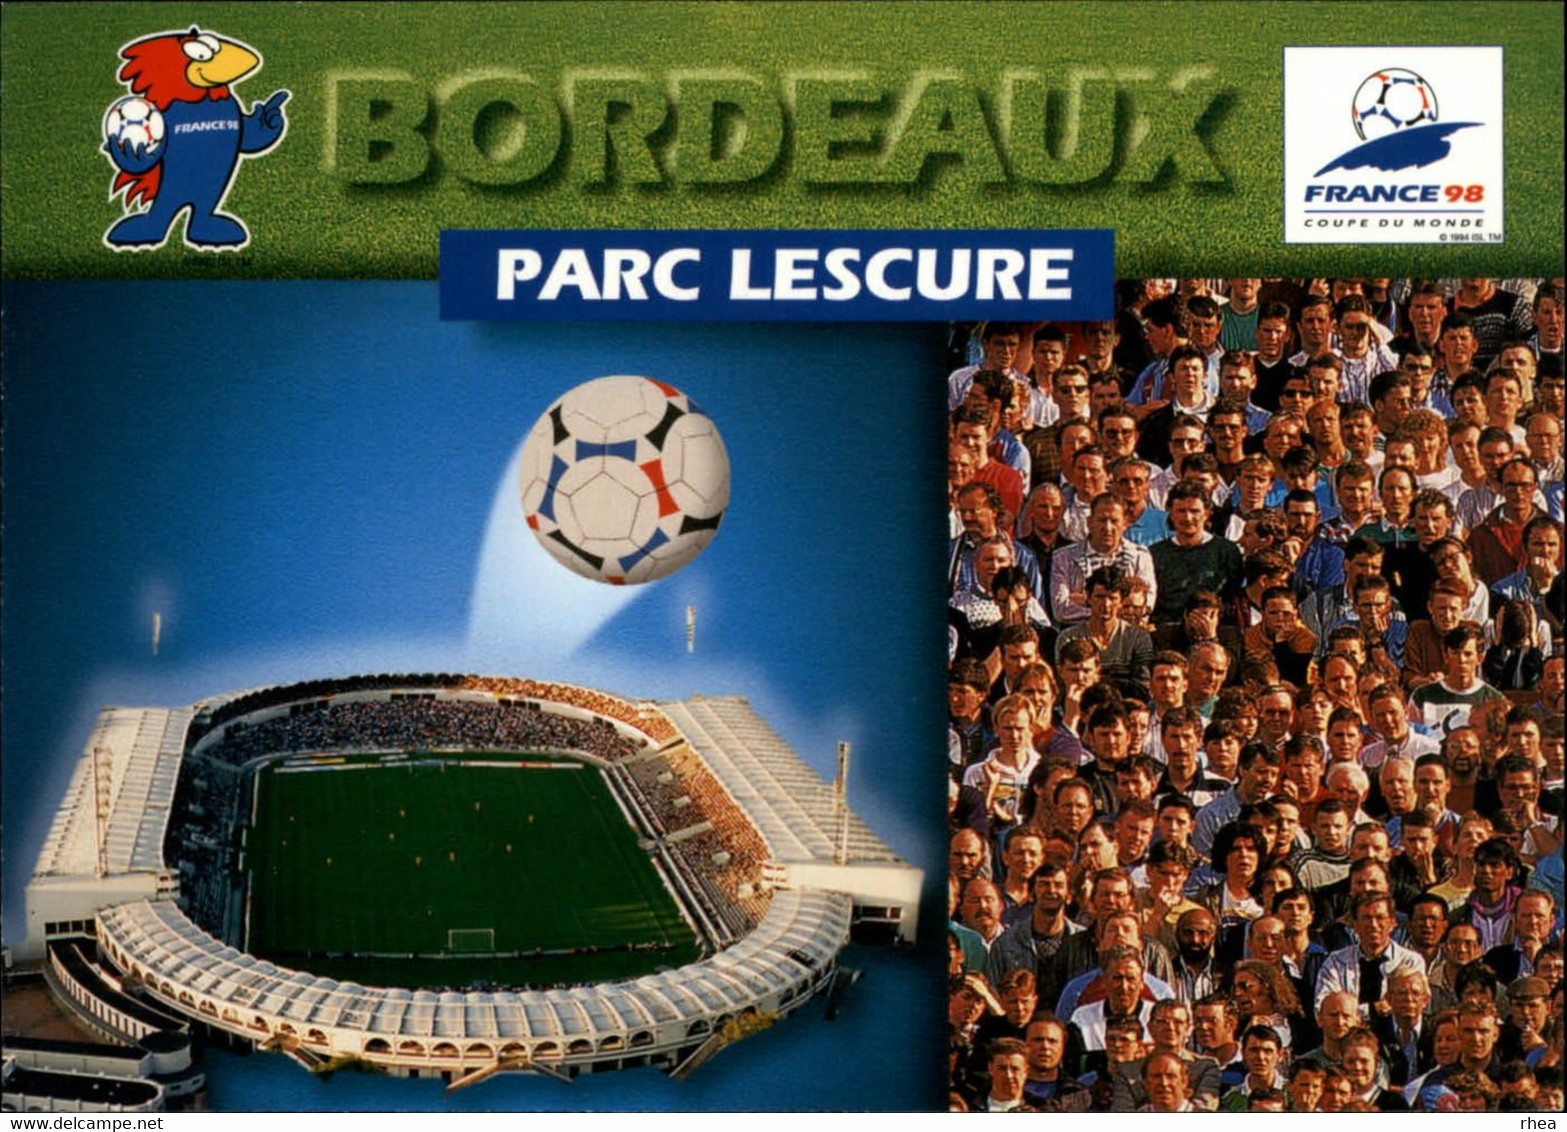 SPORTS - FOOTBALL - Série de 9 cartes - Stades coupe du Monde 98 - nantes, paris, marseille, lens, bordeaux, lyon, etc